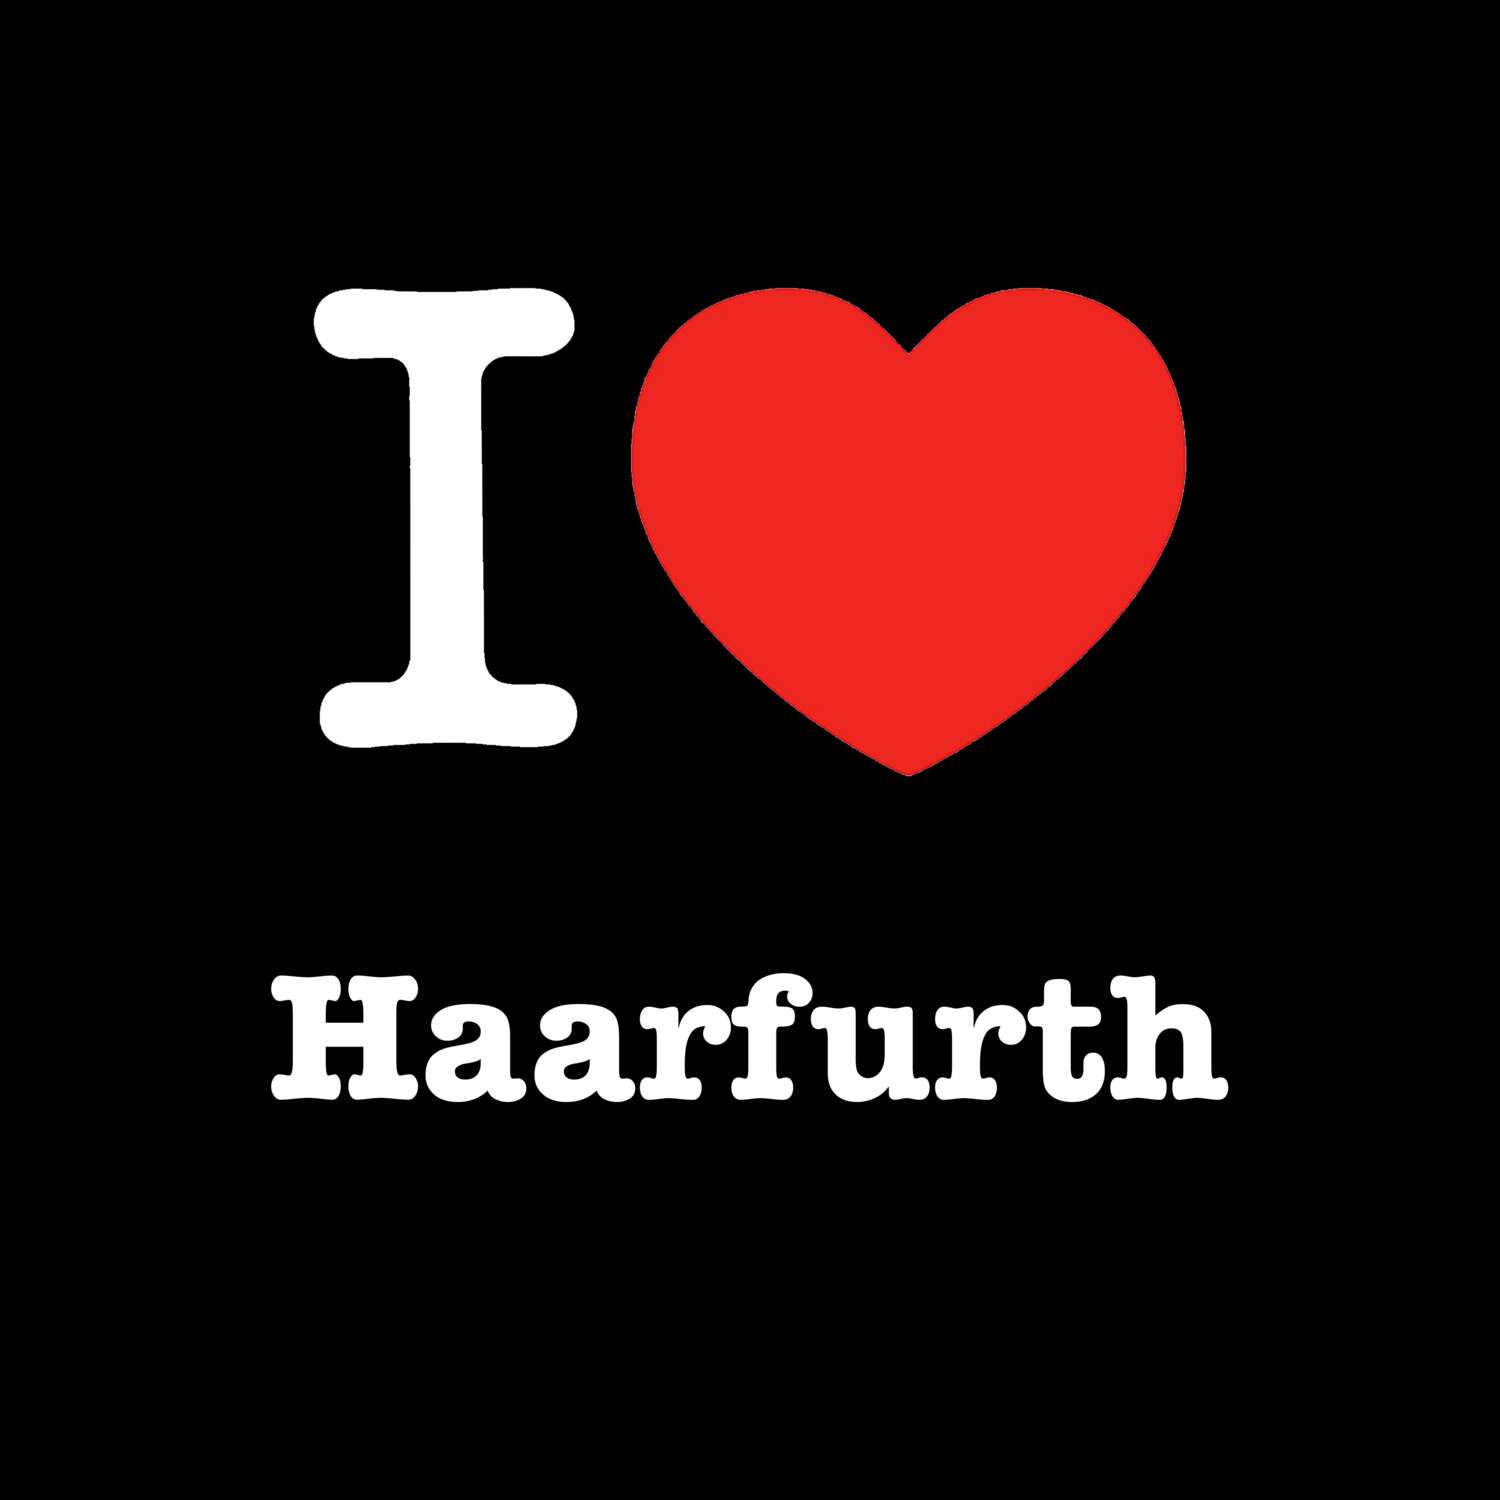 Haarfurth T-Shirt »I love«